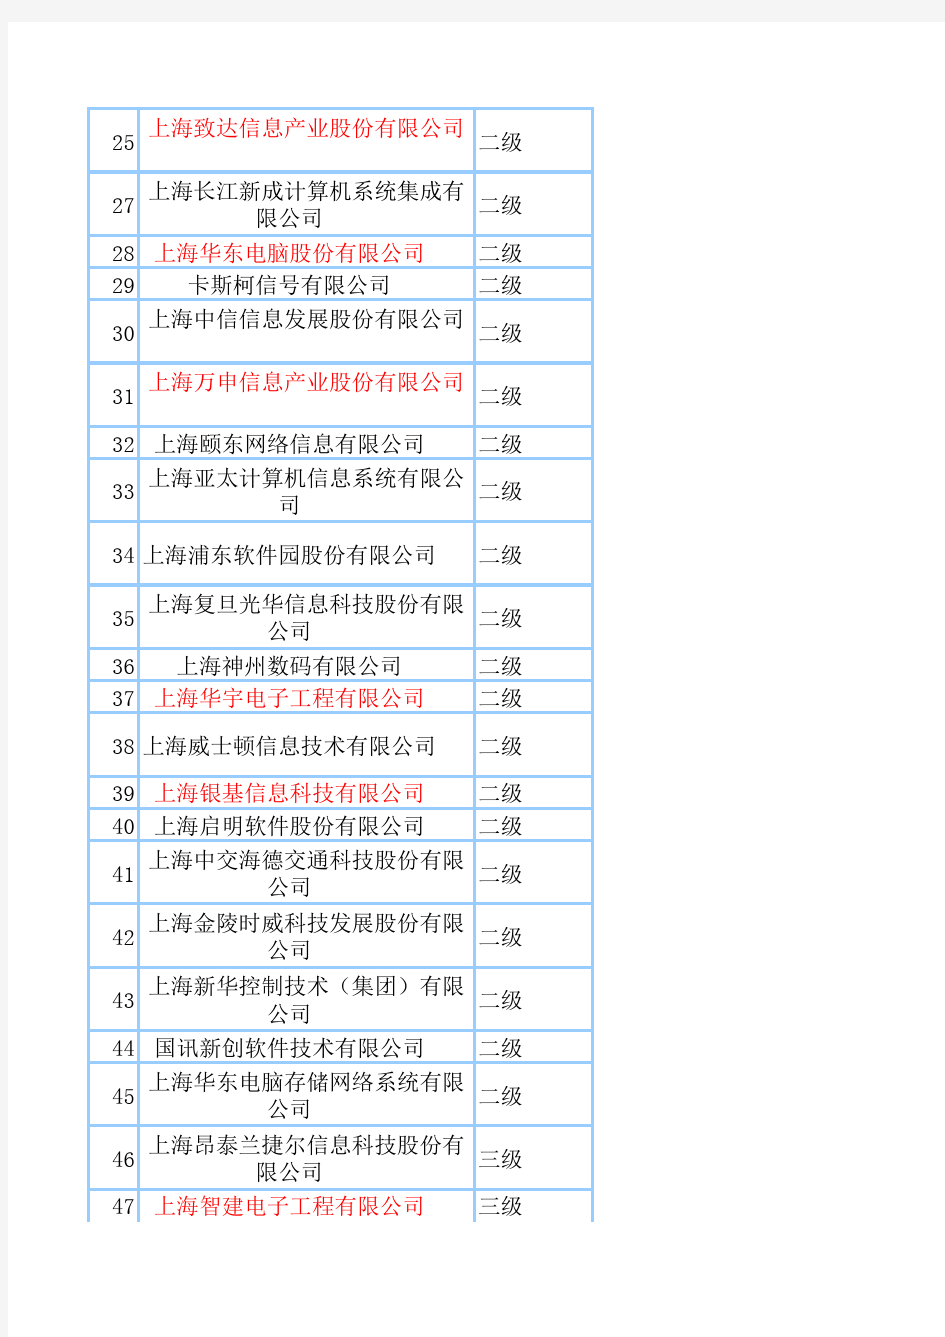 上海系统集成商名单